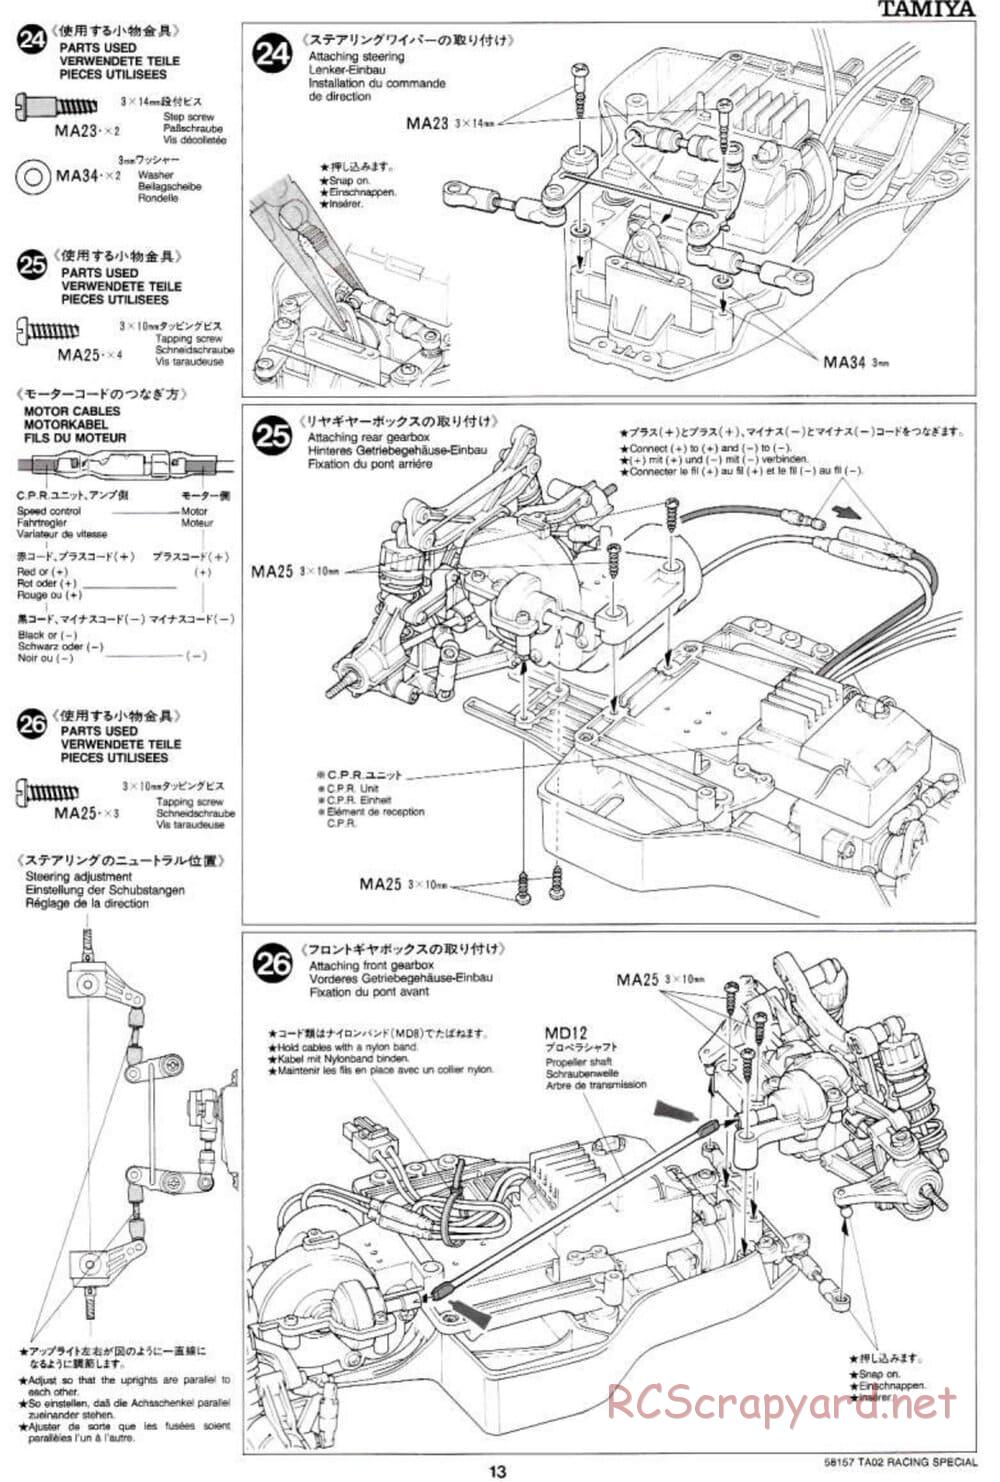 Tamiya - TA-02RS Chassis - Manual - Page 13